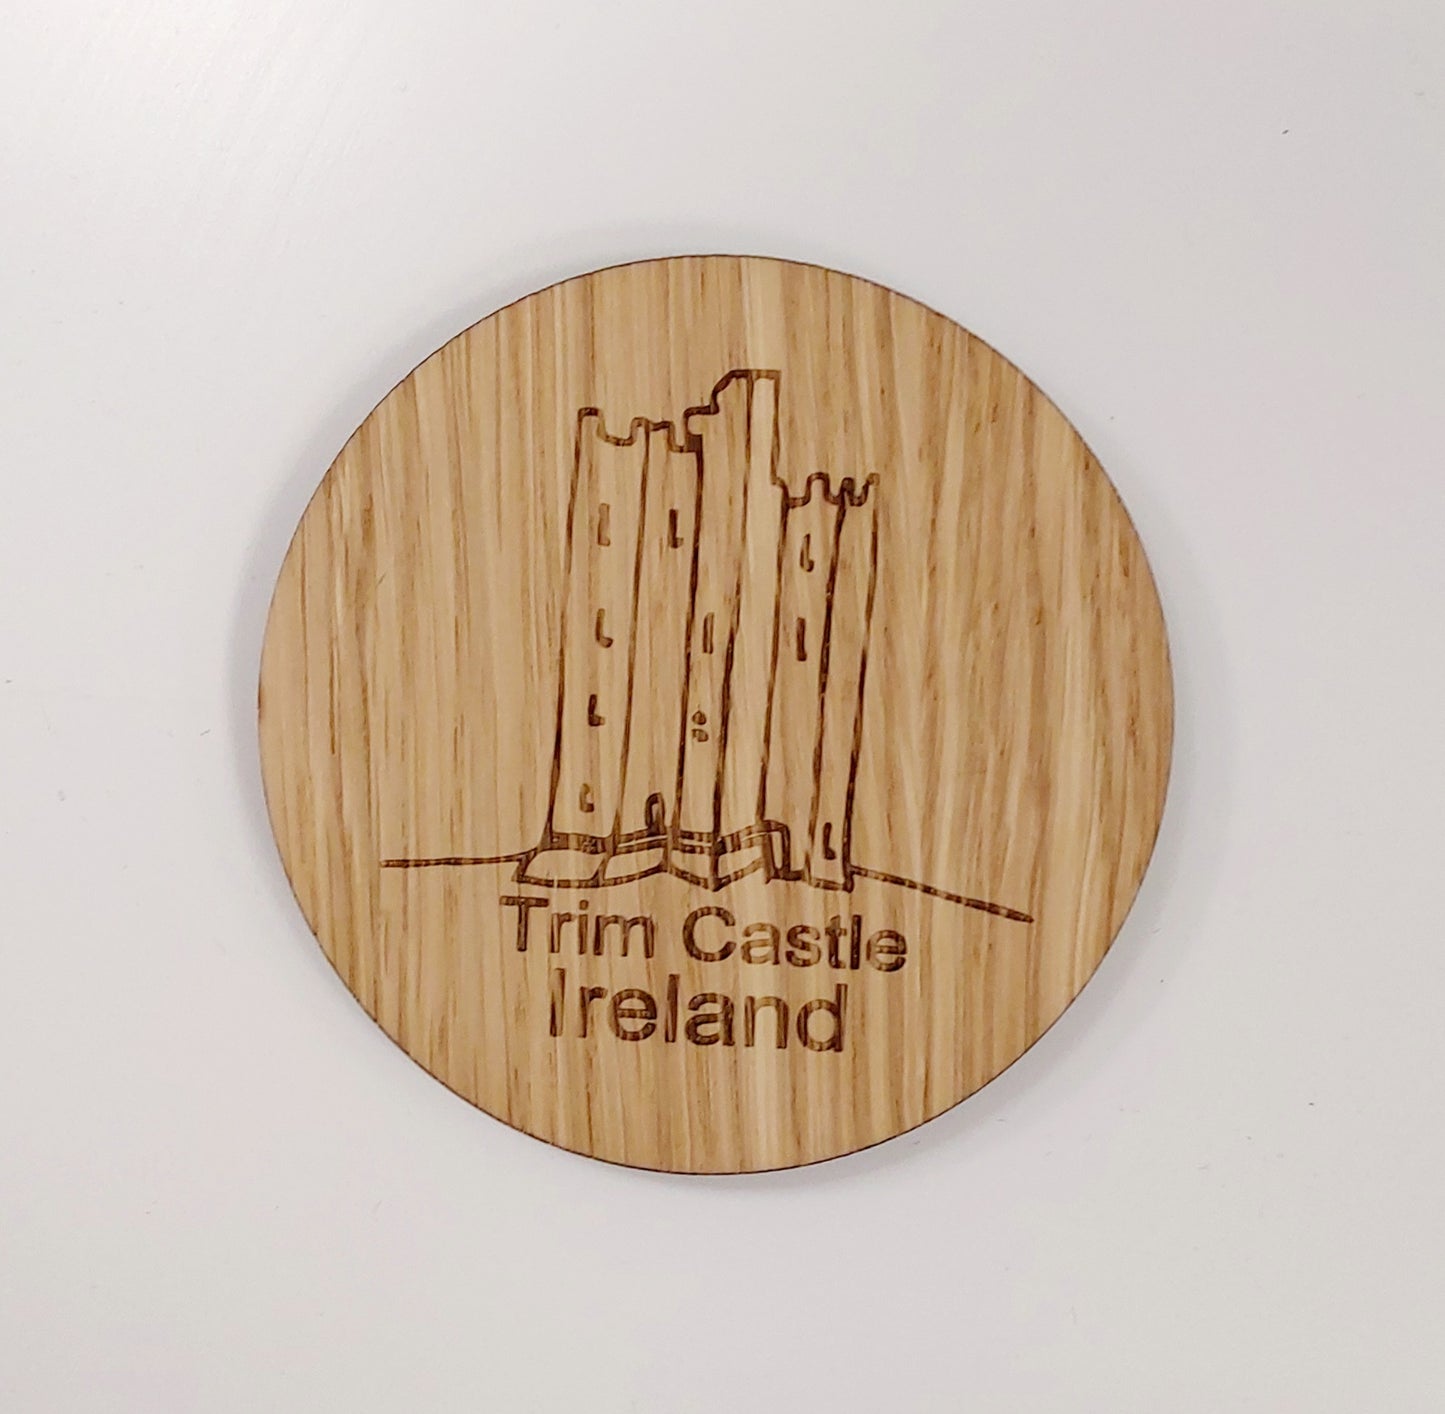 Trim Wooden Coaster